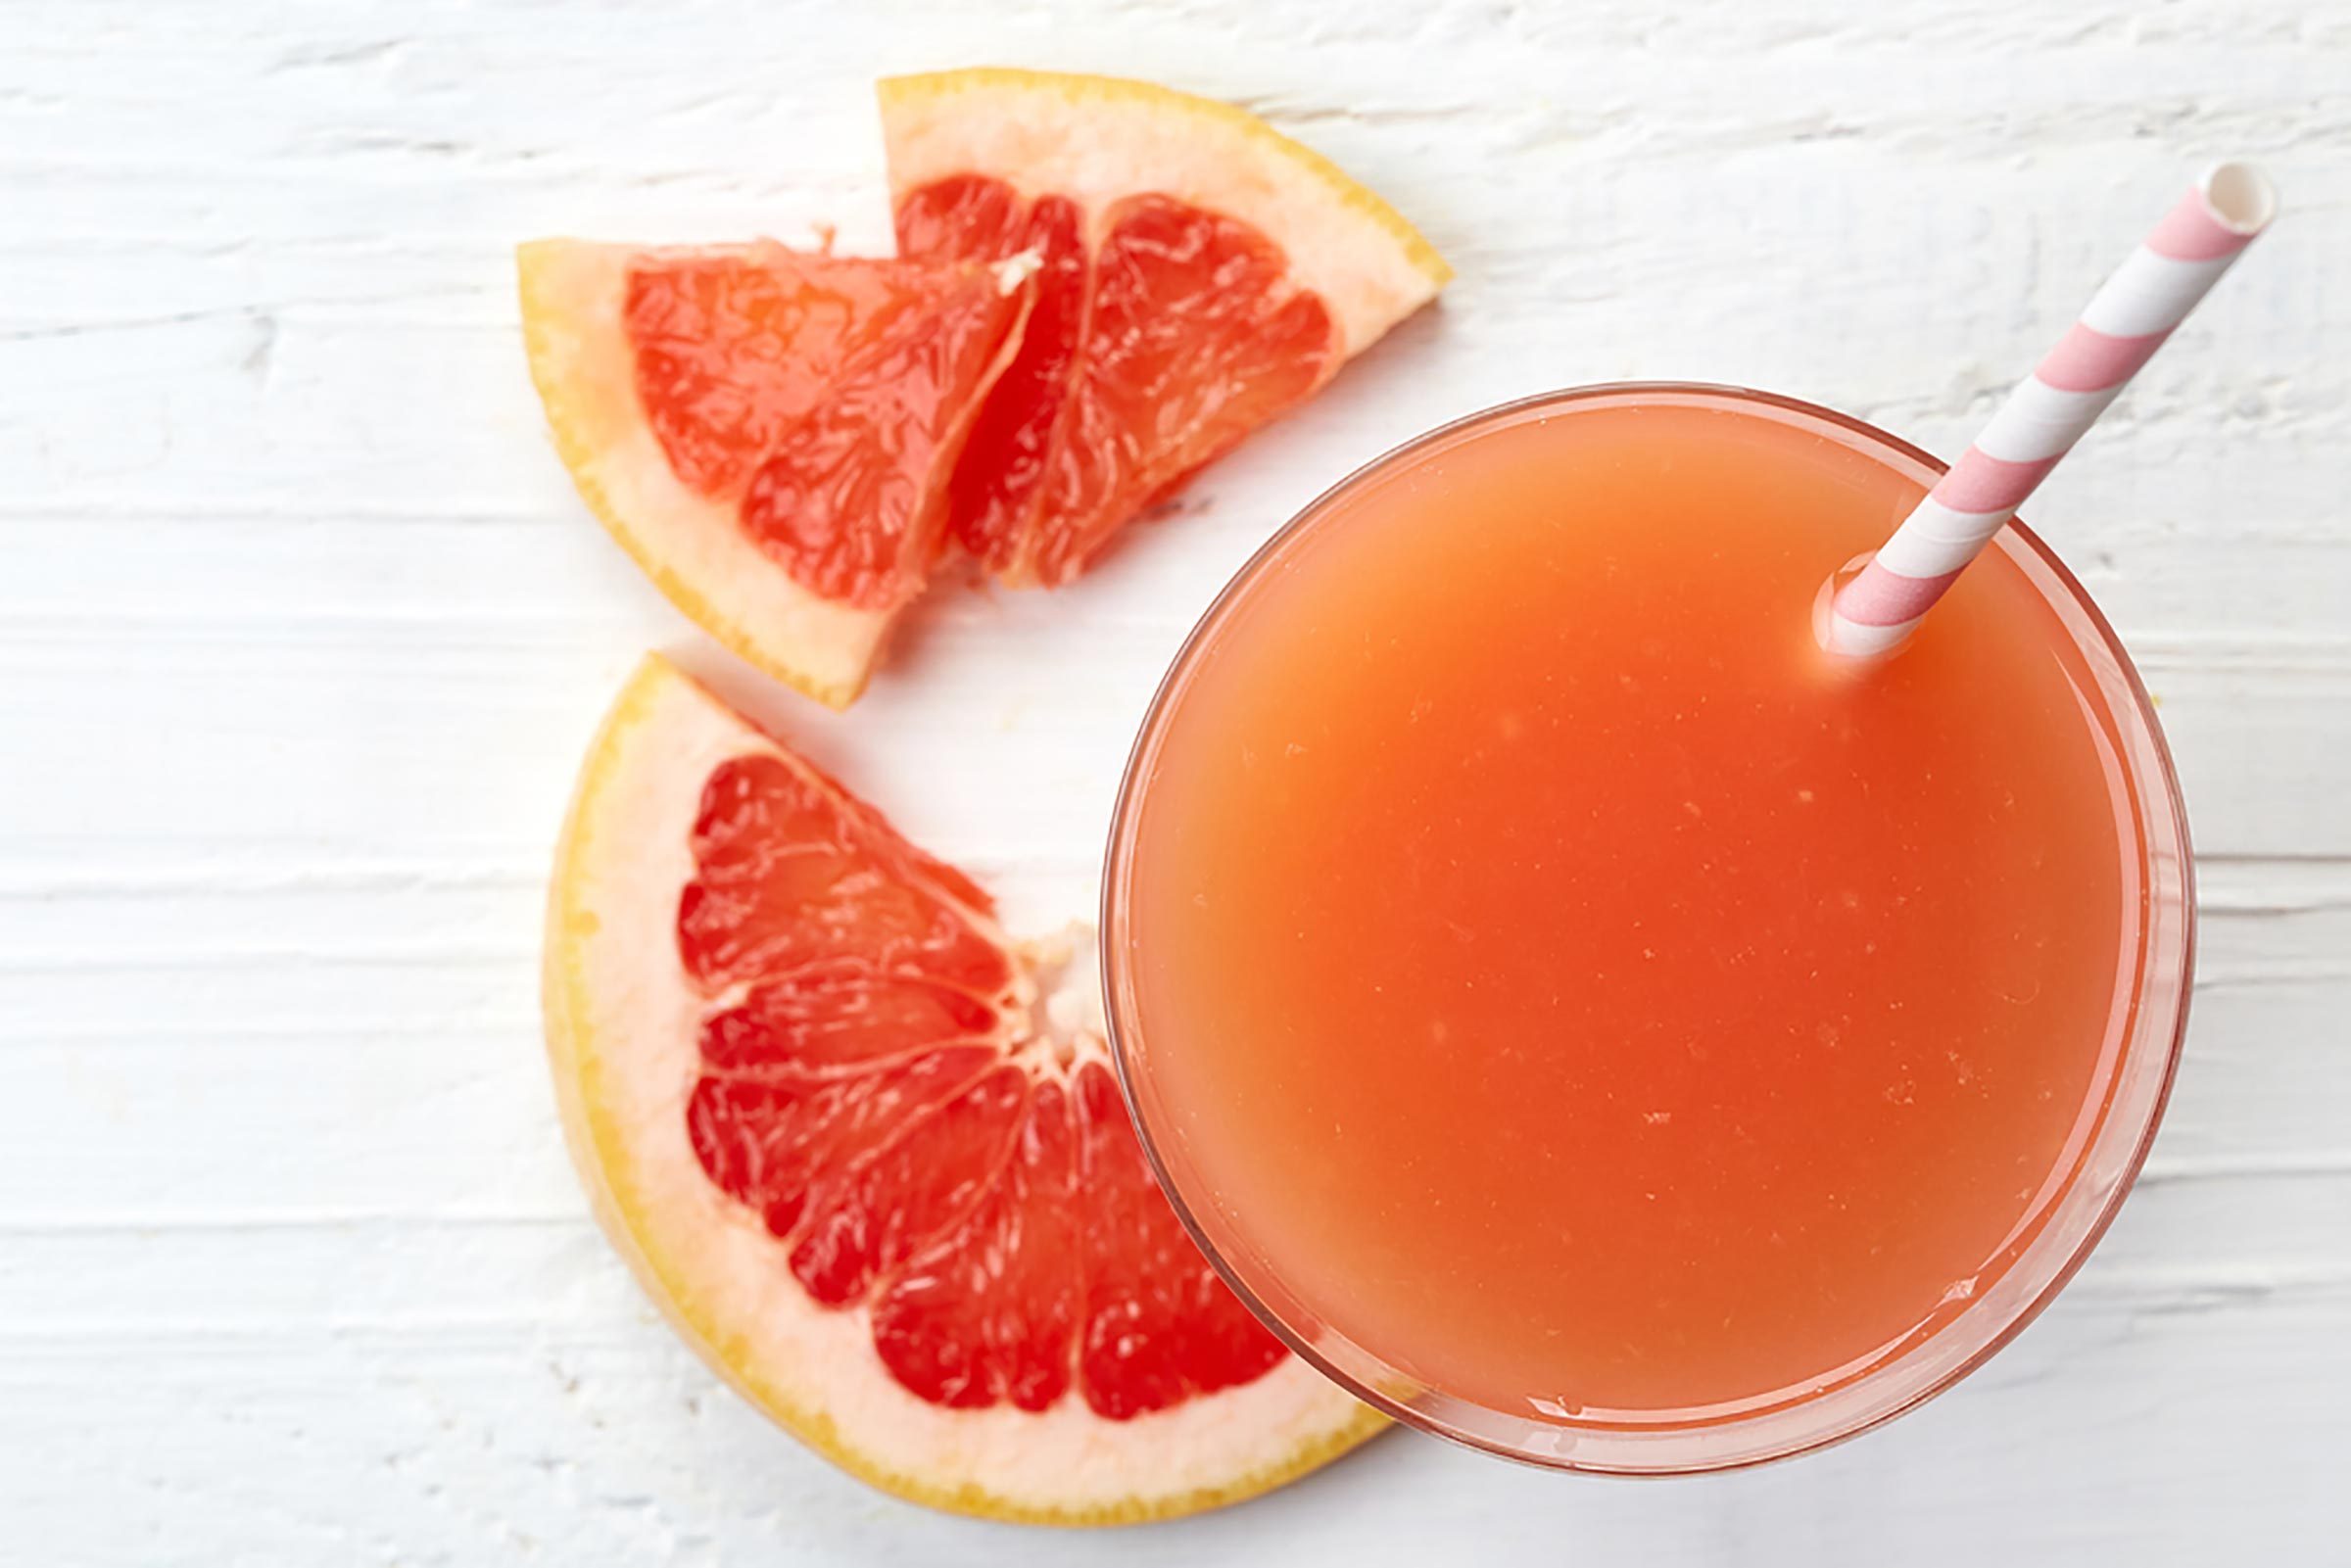 стакан грейпфрутового сока с розово-белой полосатой соломинкой